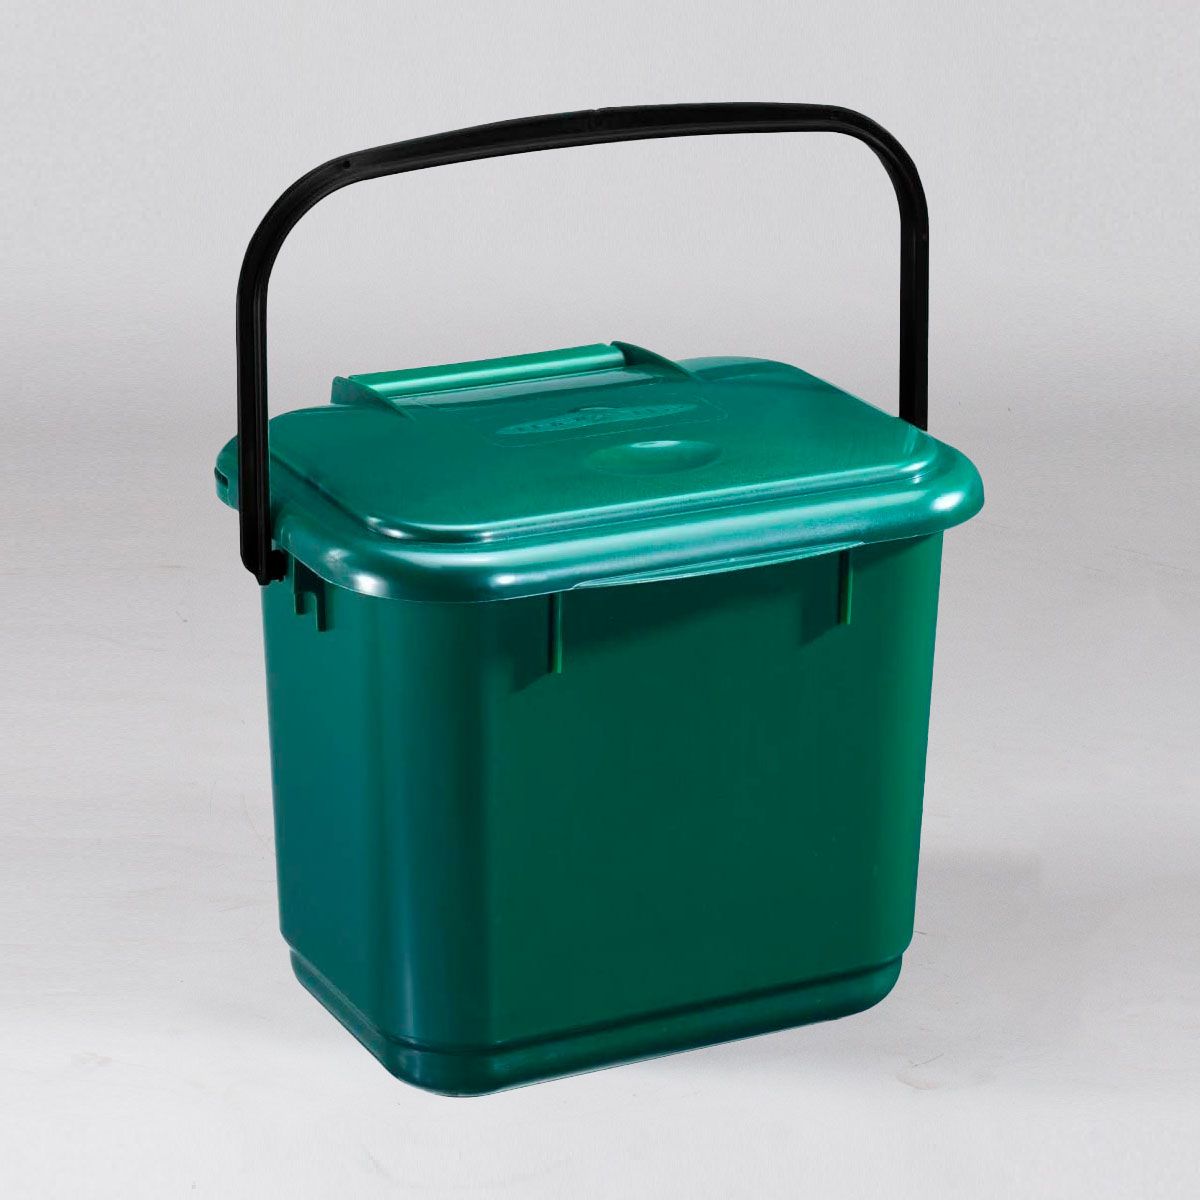 Cubo de basura con ruedas en plástico, volumen de 80 litros, verde